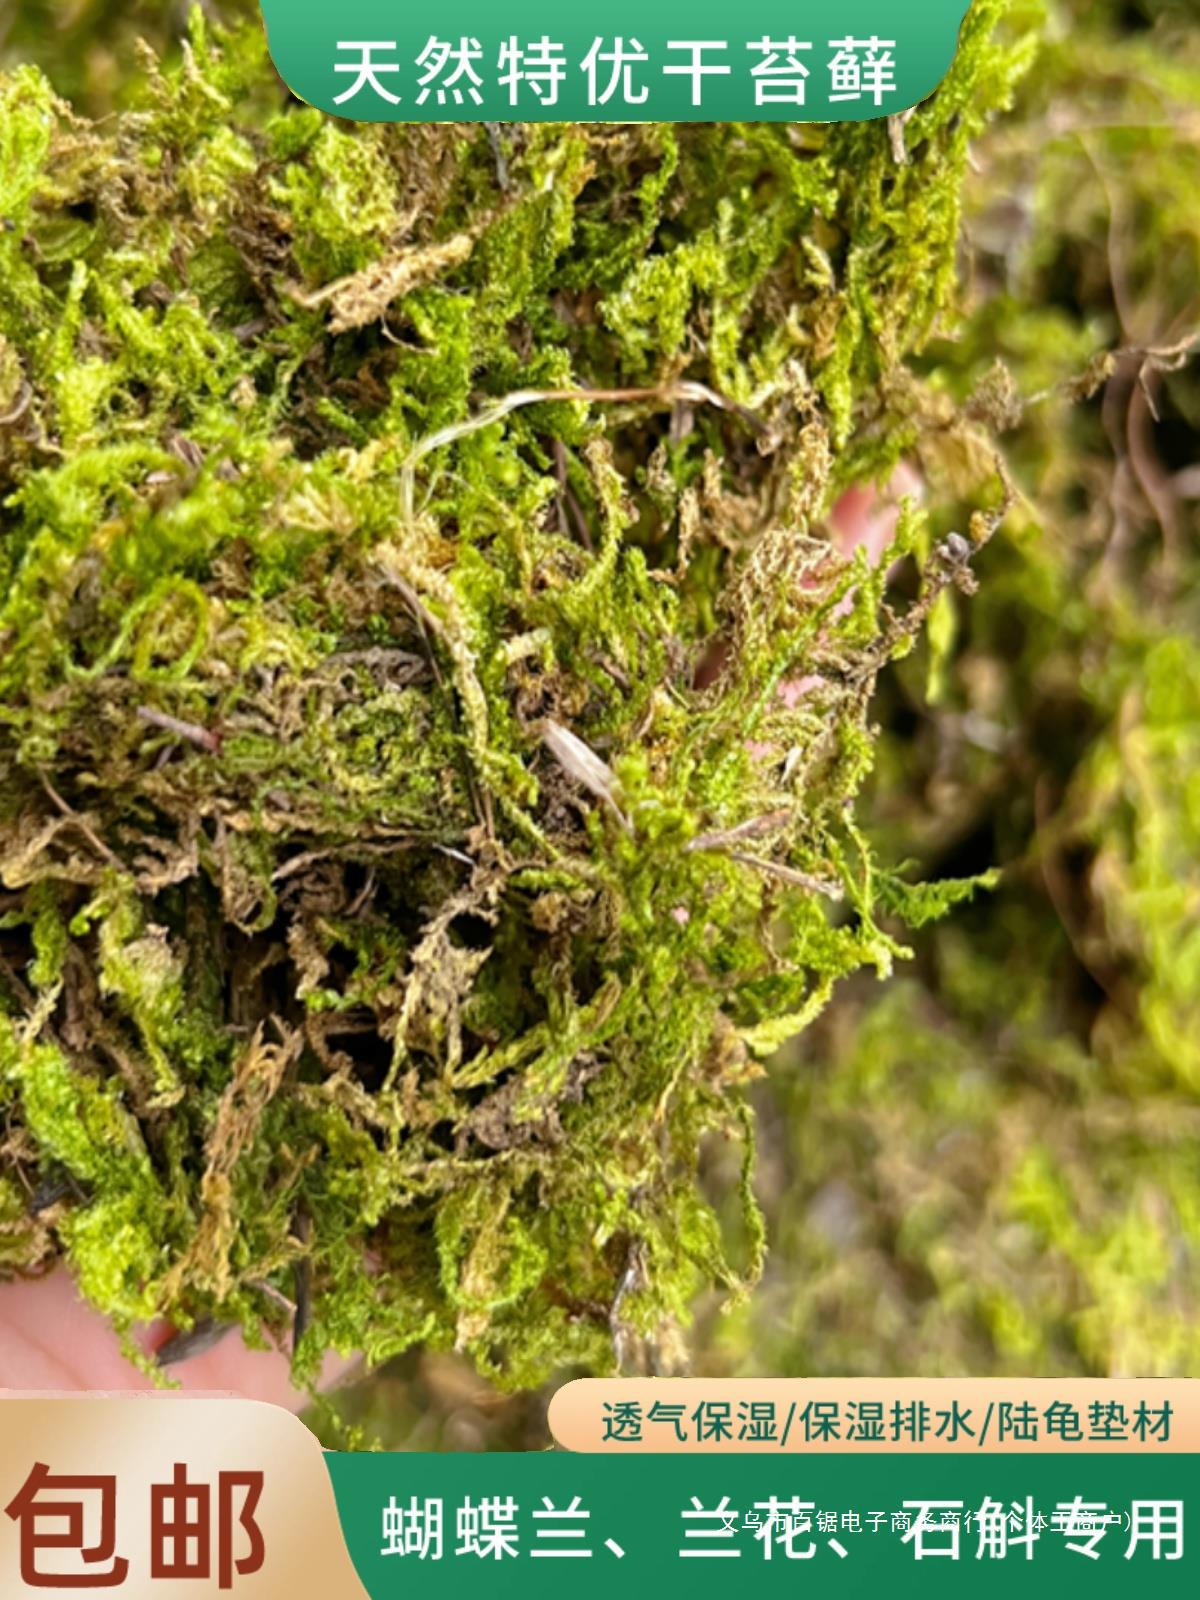 新鲜干苔藓兰花蝴蝶兰专用水苔兰花种植干苔藓青苔营养土爬宠垫材